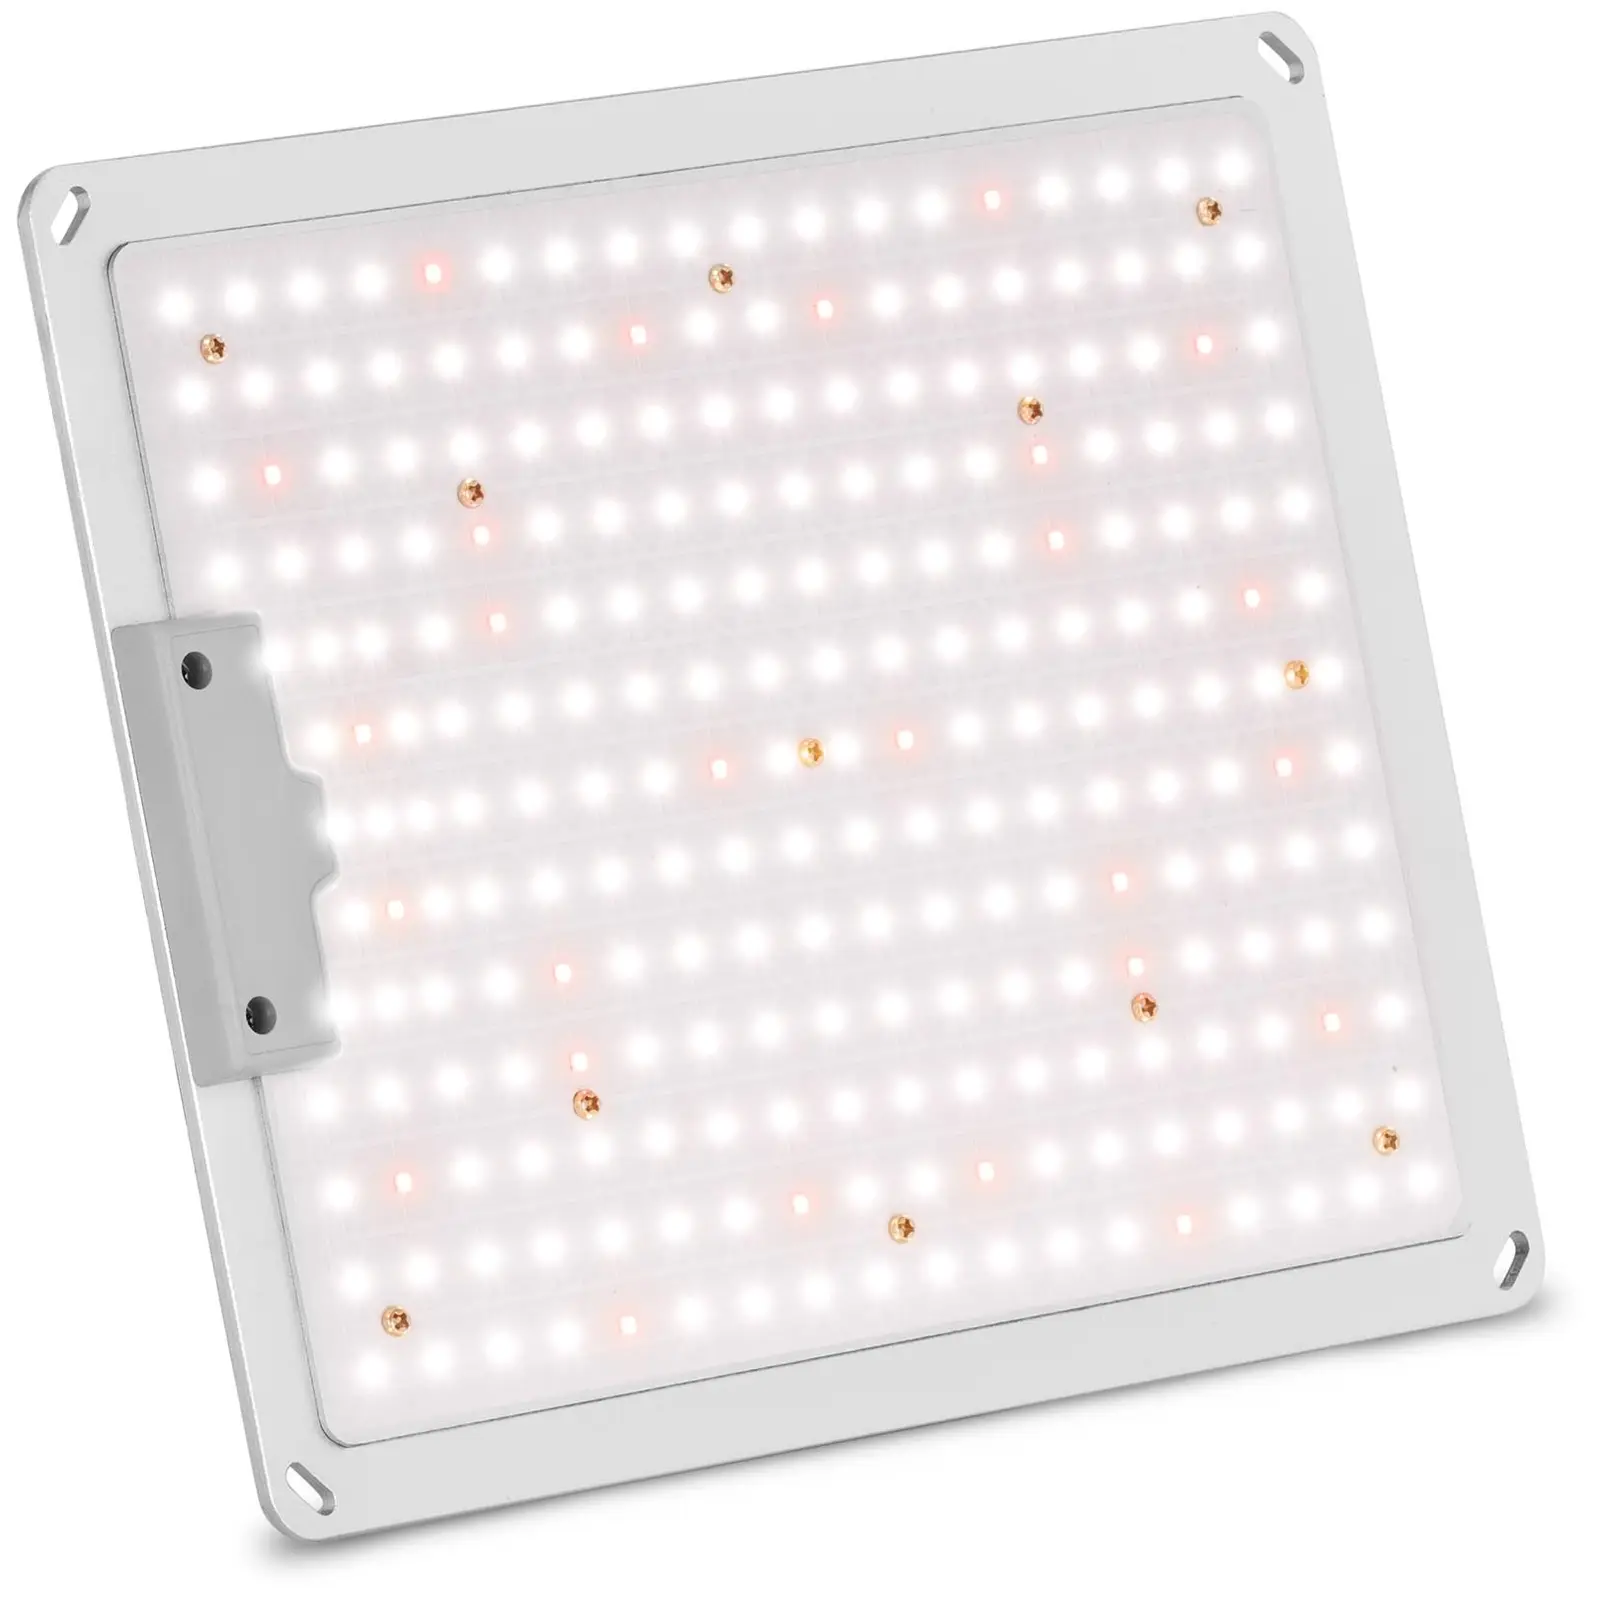 LED Grow Light - Full spectrum - 110 W - 234 LEDs - 10,000 lumens